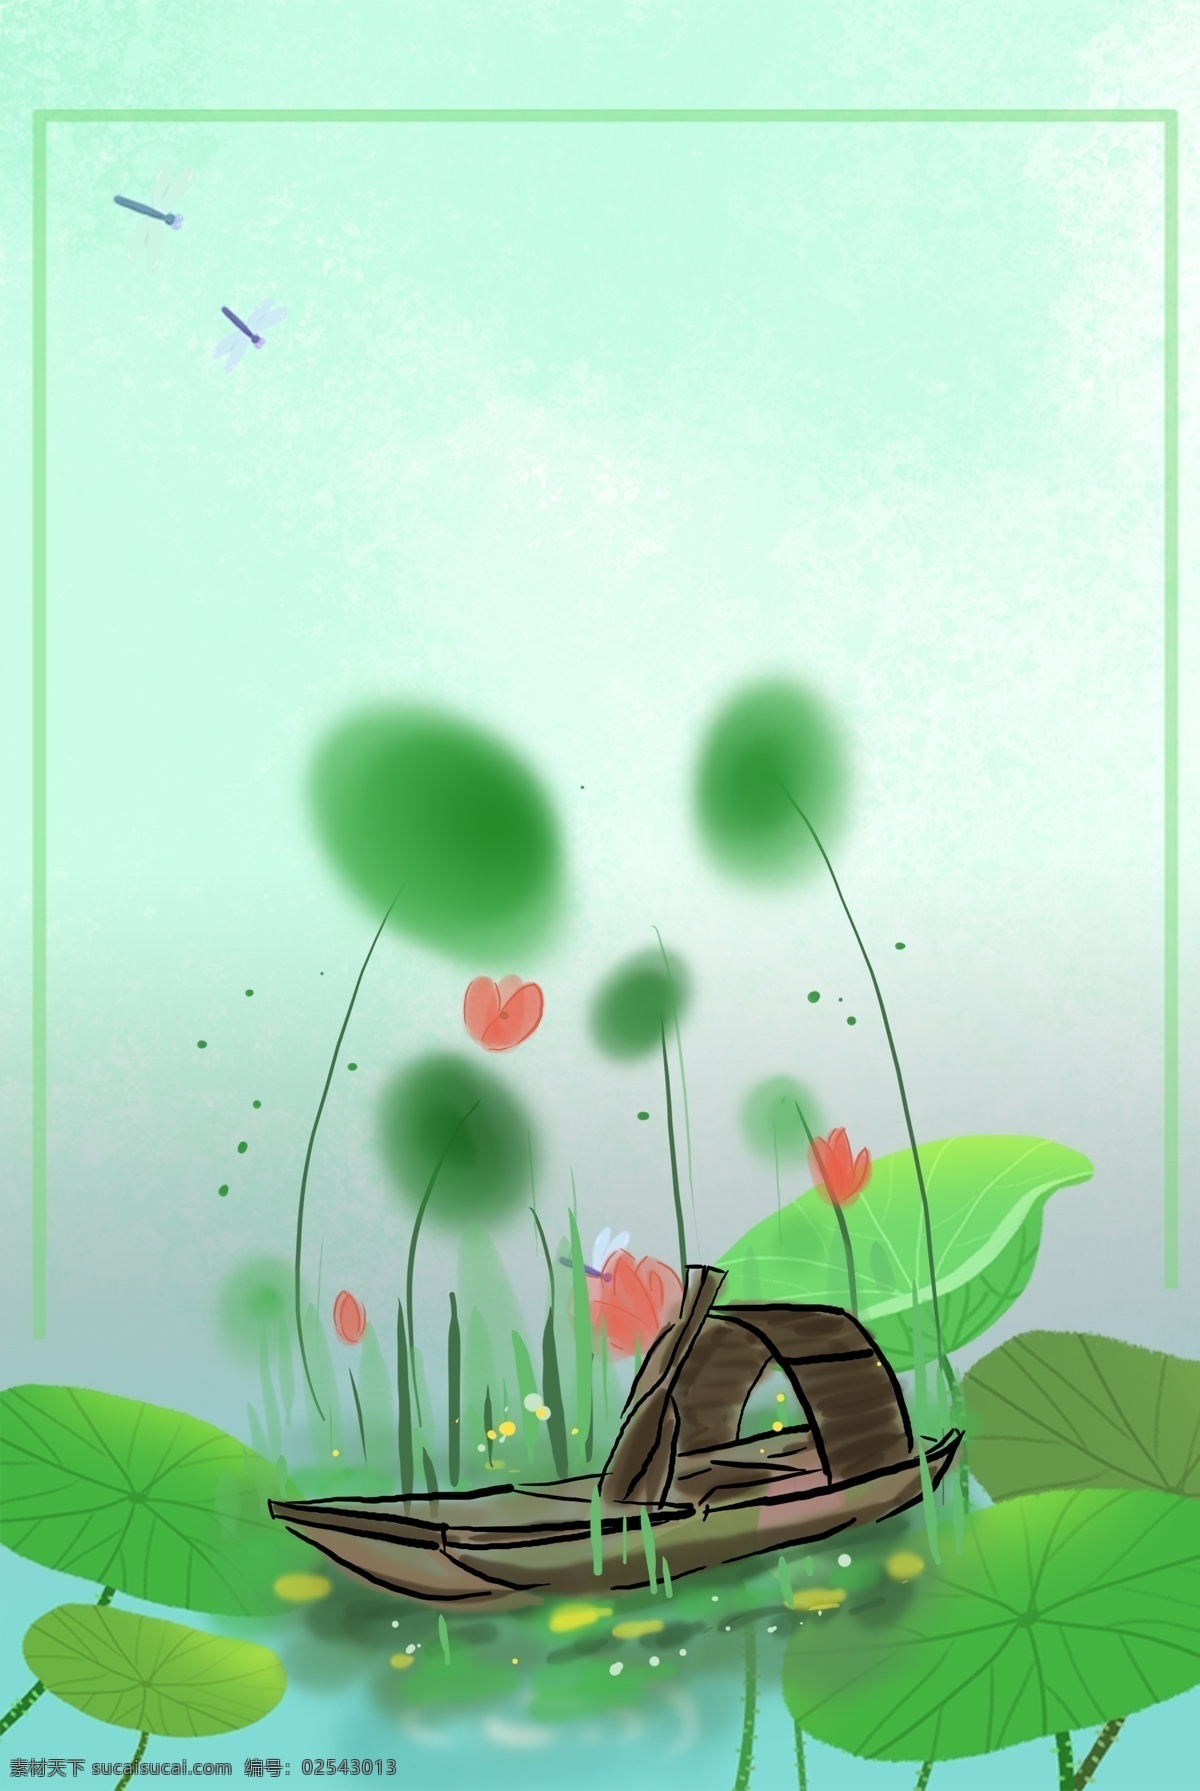 中国 水墨 乌篷船 荷塘 背景 中国水墨 传统 古风 国画 夏天 夏季 手绘 植物 船只 荷叶